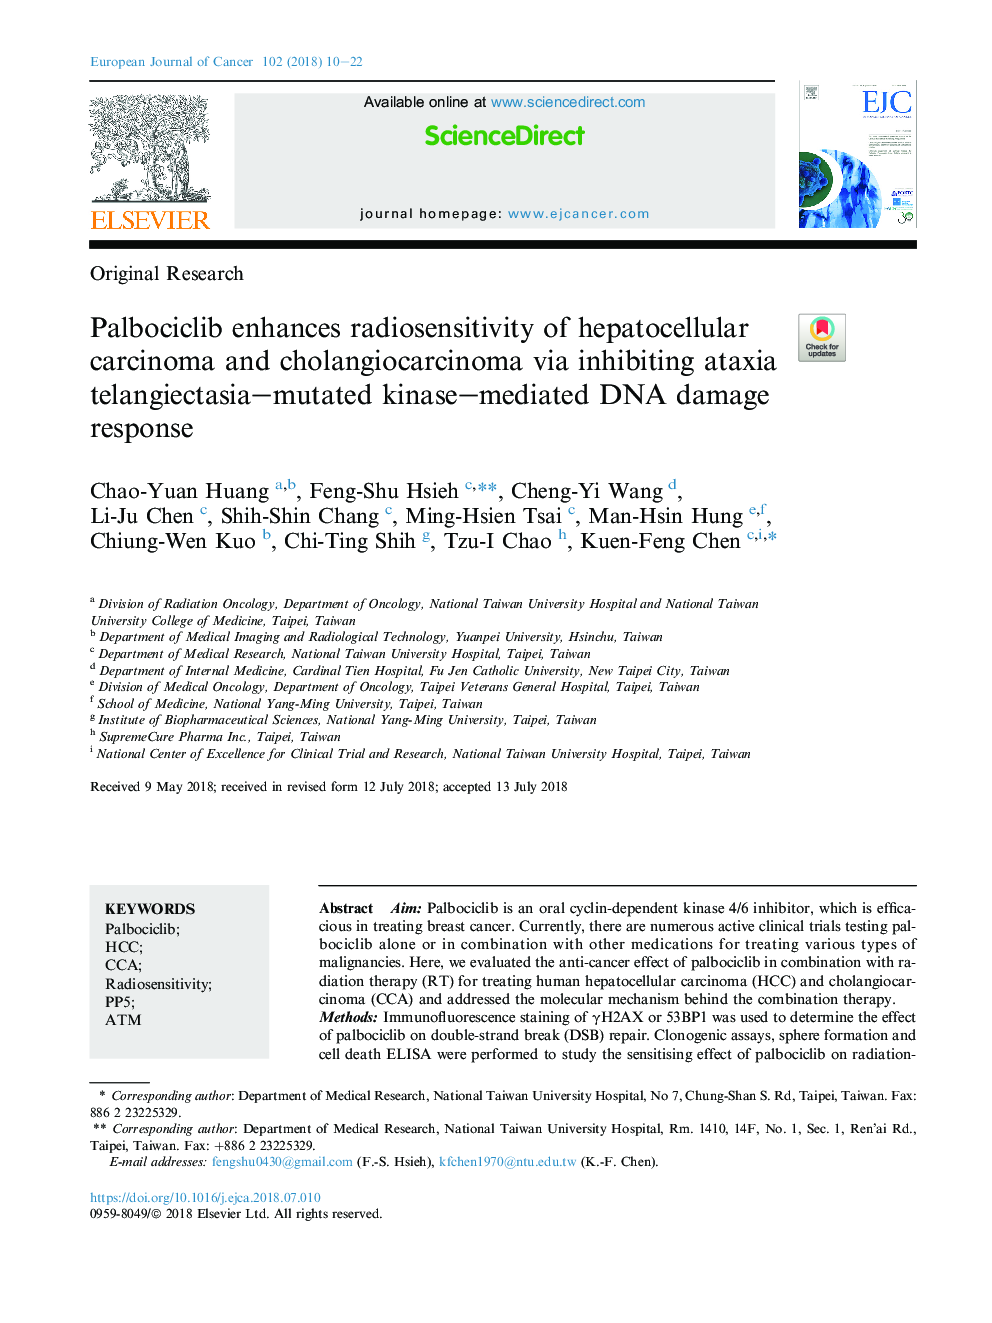 Palbociclib enhances radiosensitivity of hepatocellular carcinoma and cholangiocarcinoma via inhibiting ataxia telangiectasia-mutated kinase-mediated DNA damage response